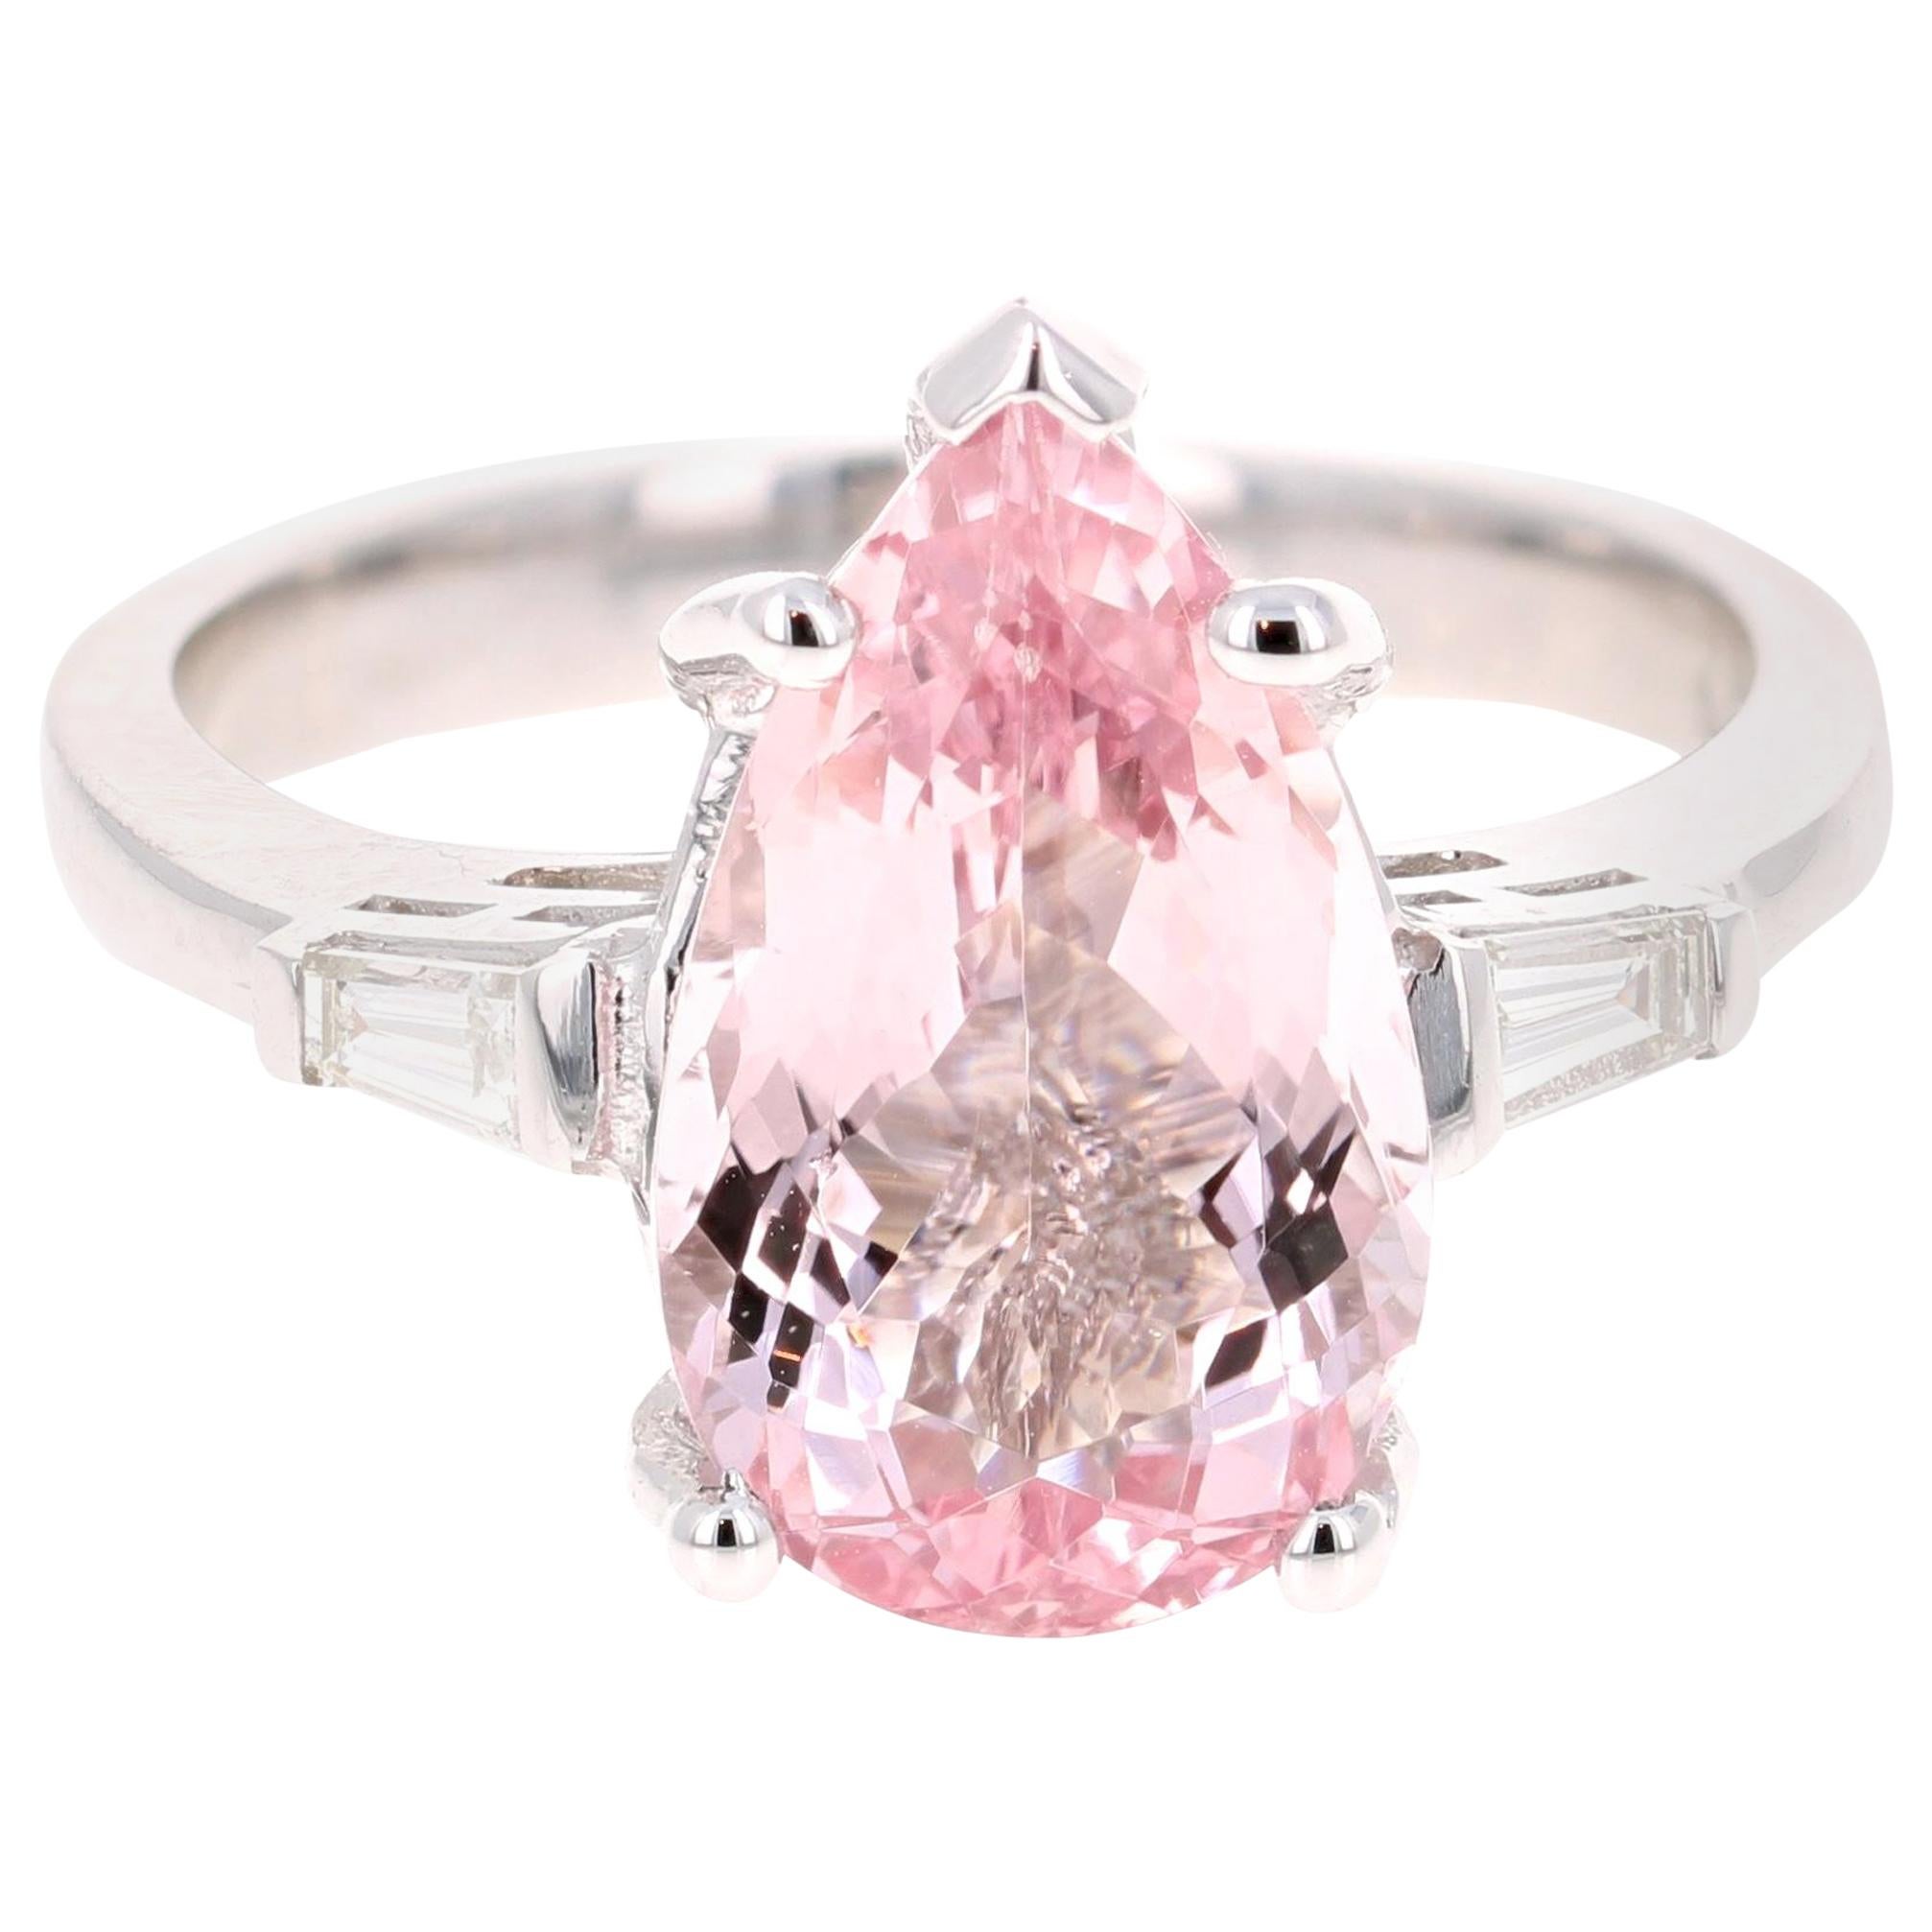 3.90 Carat Pear Cut Pink Morganite Diamond 14 Karat White Gold Engagement Ring